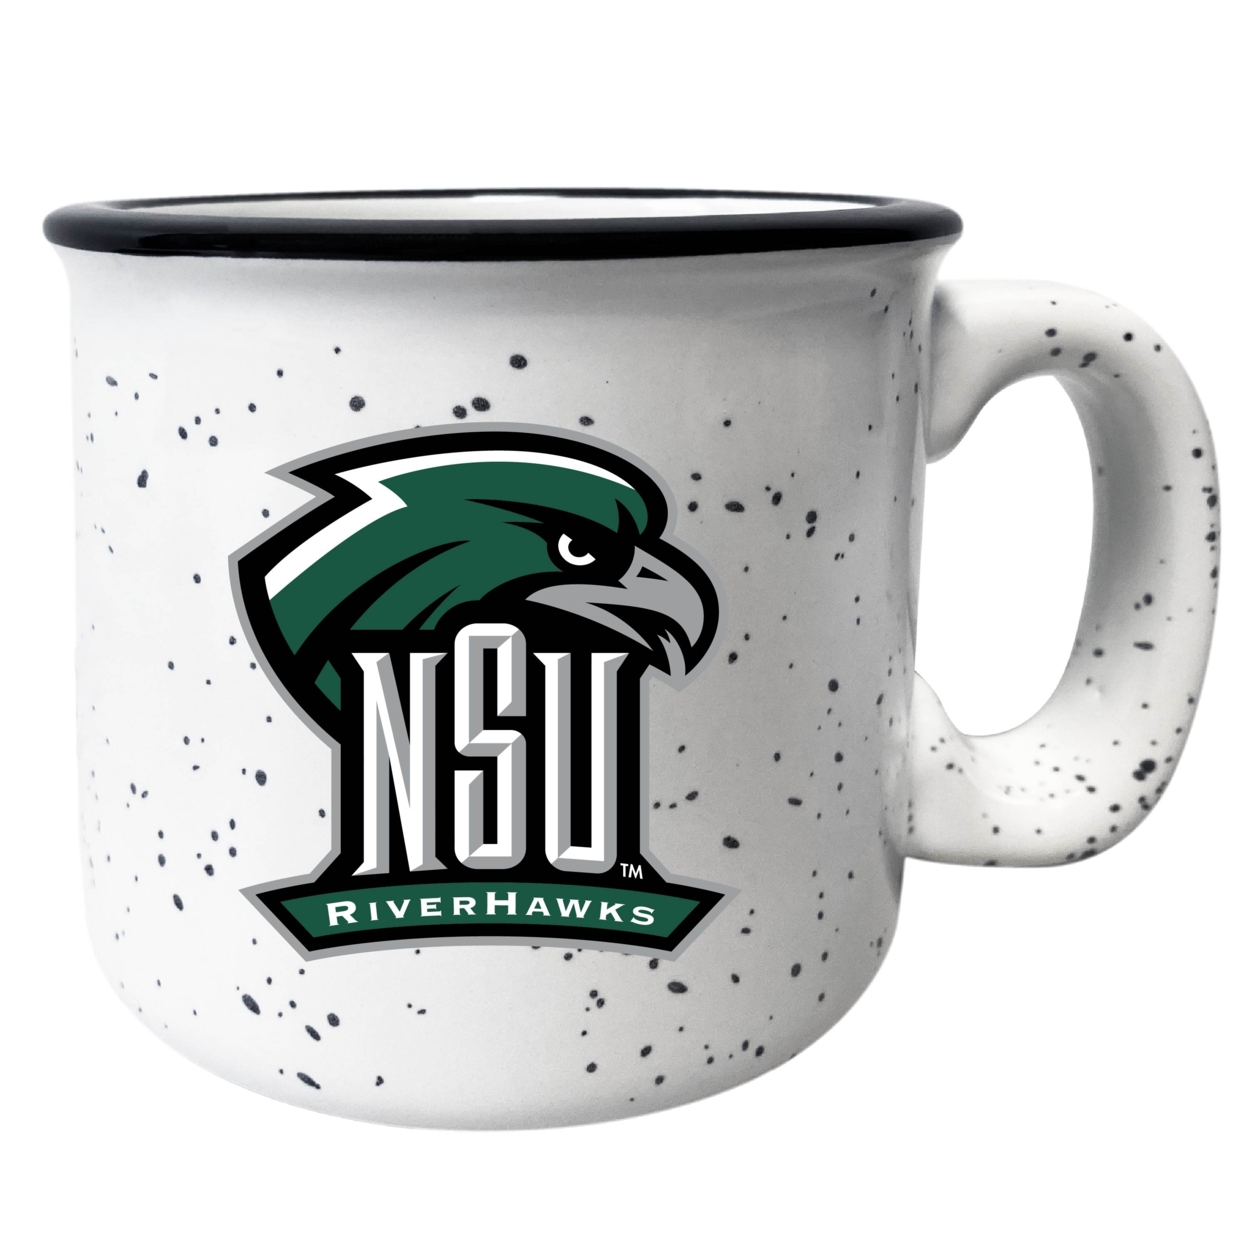 Northeastern State University Riverhawks Ceramic Camper Mug - Choose Your Color - Navy